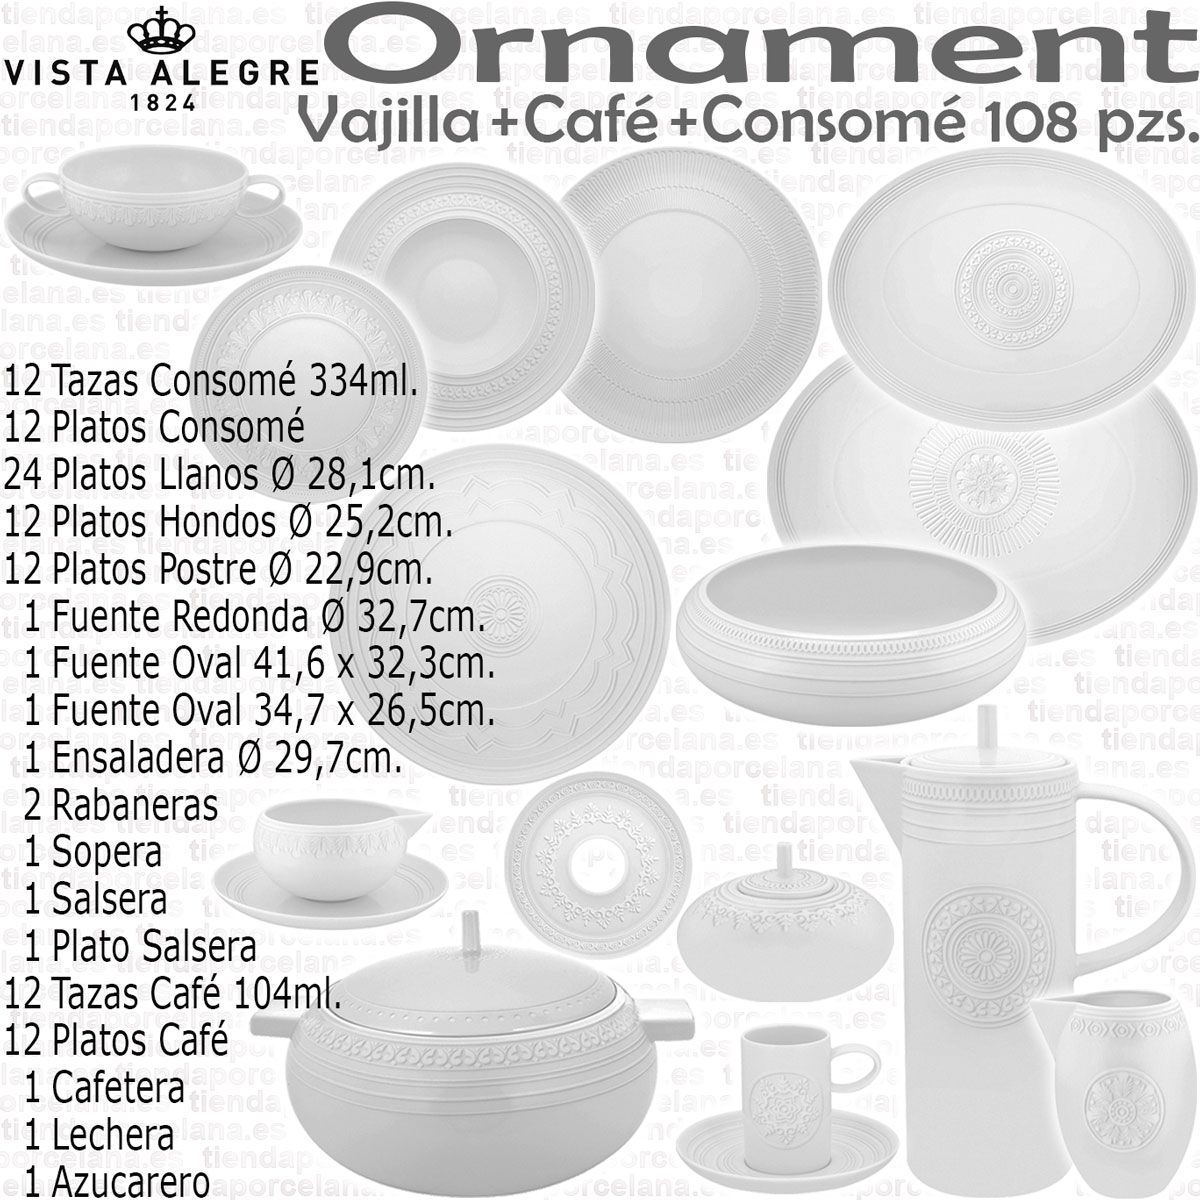 Tienda Outlet vajillas rebajadas Ornament Vista Alegre 108 piezas servicios  Café y Consomé